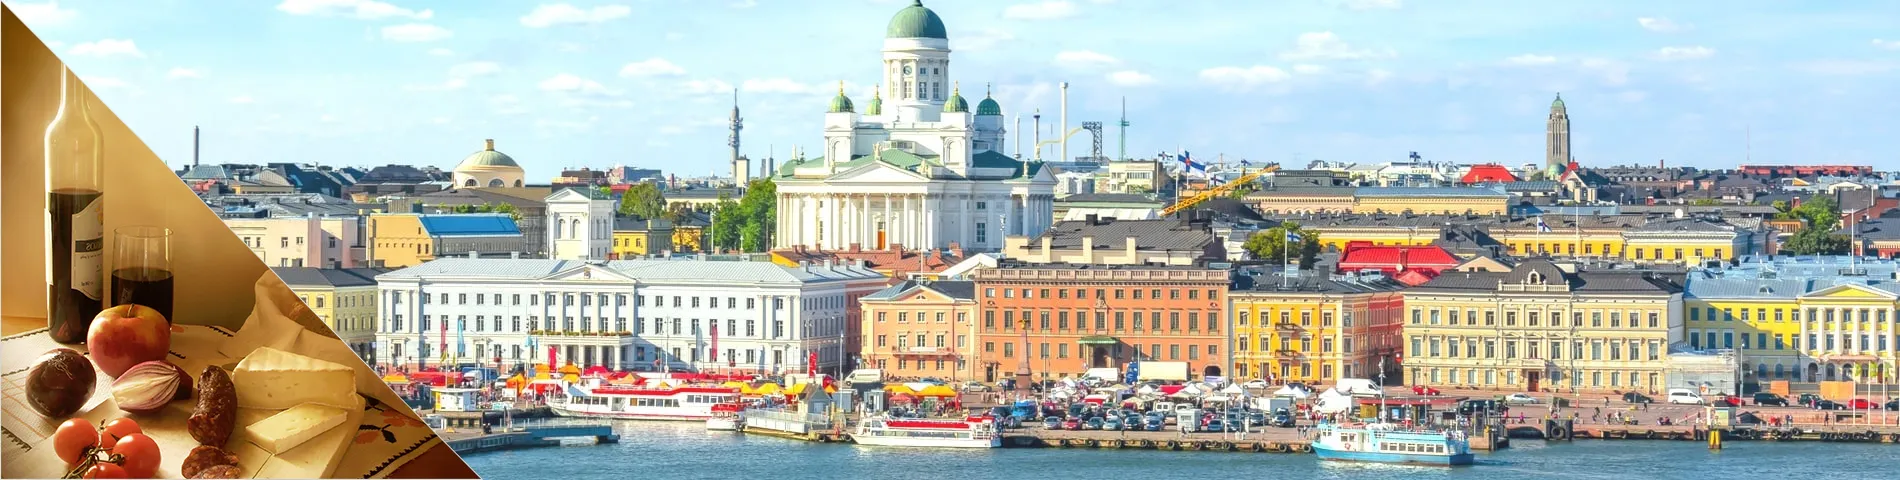 Helsinki - Fins & cultuur